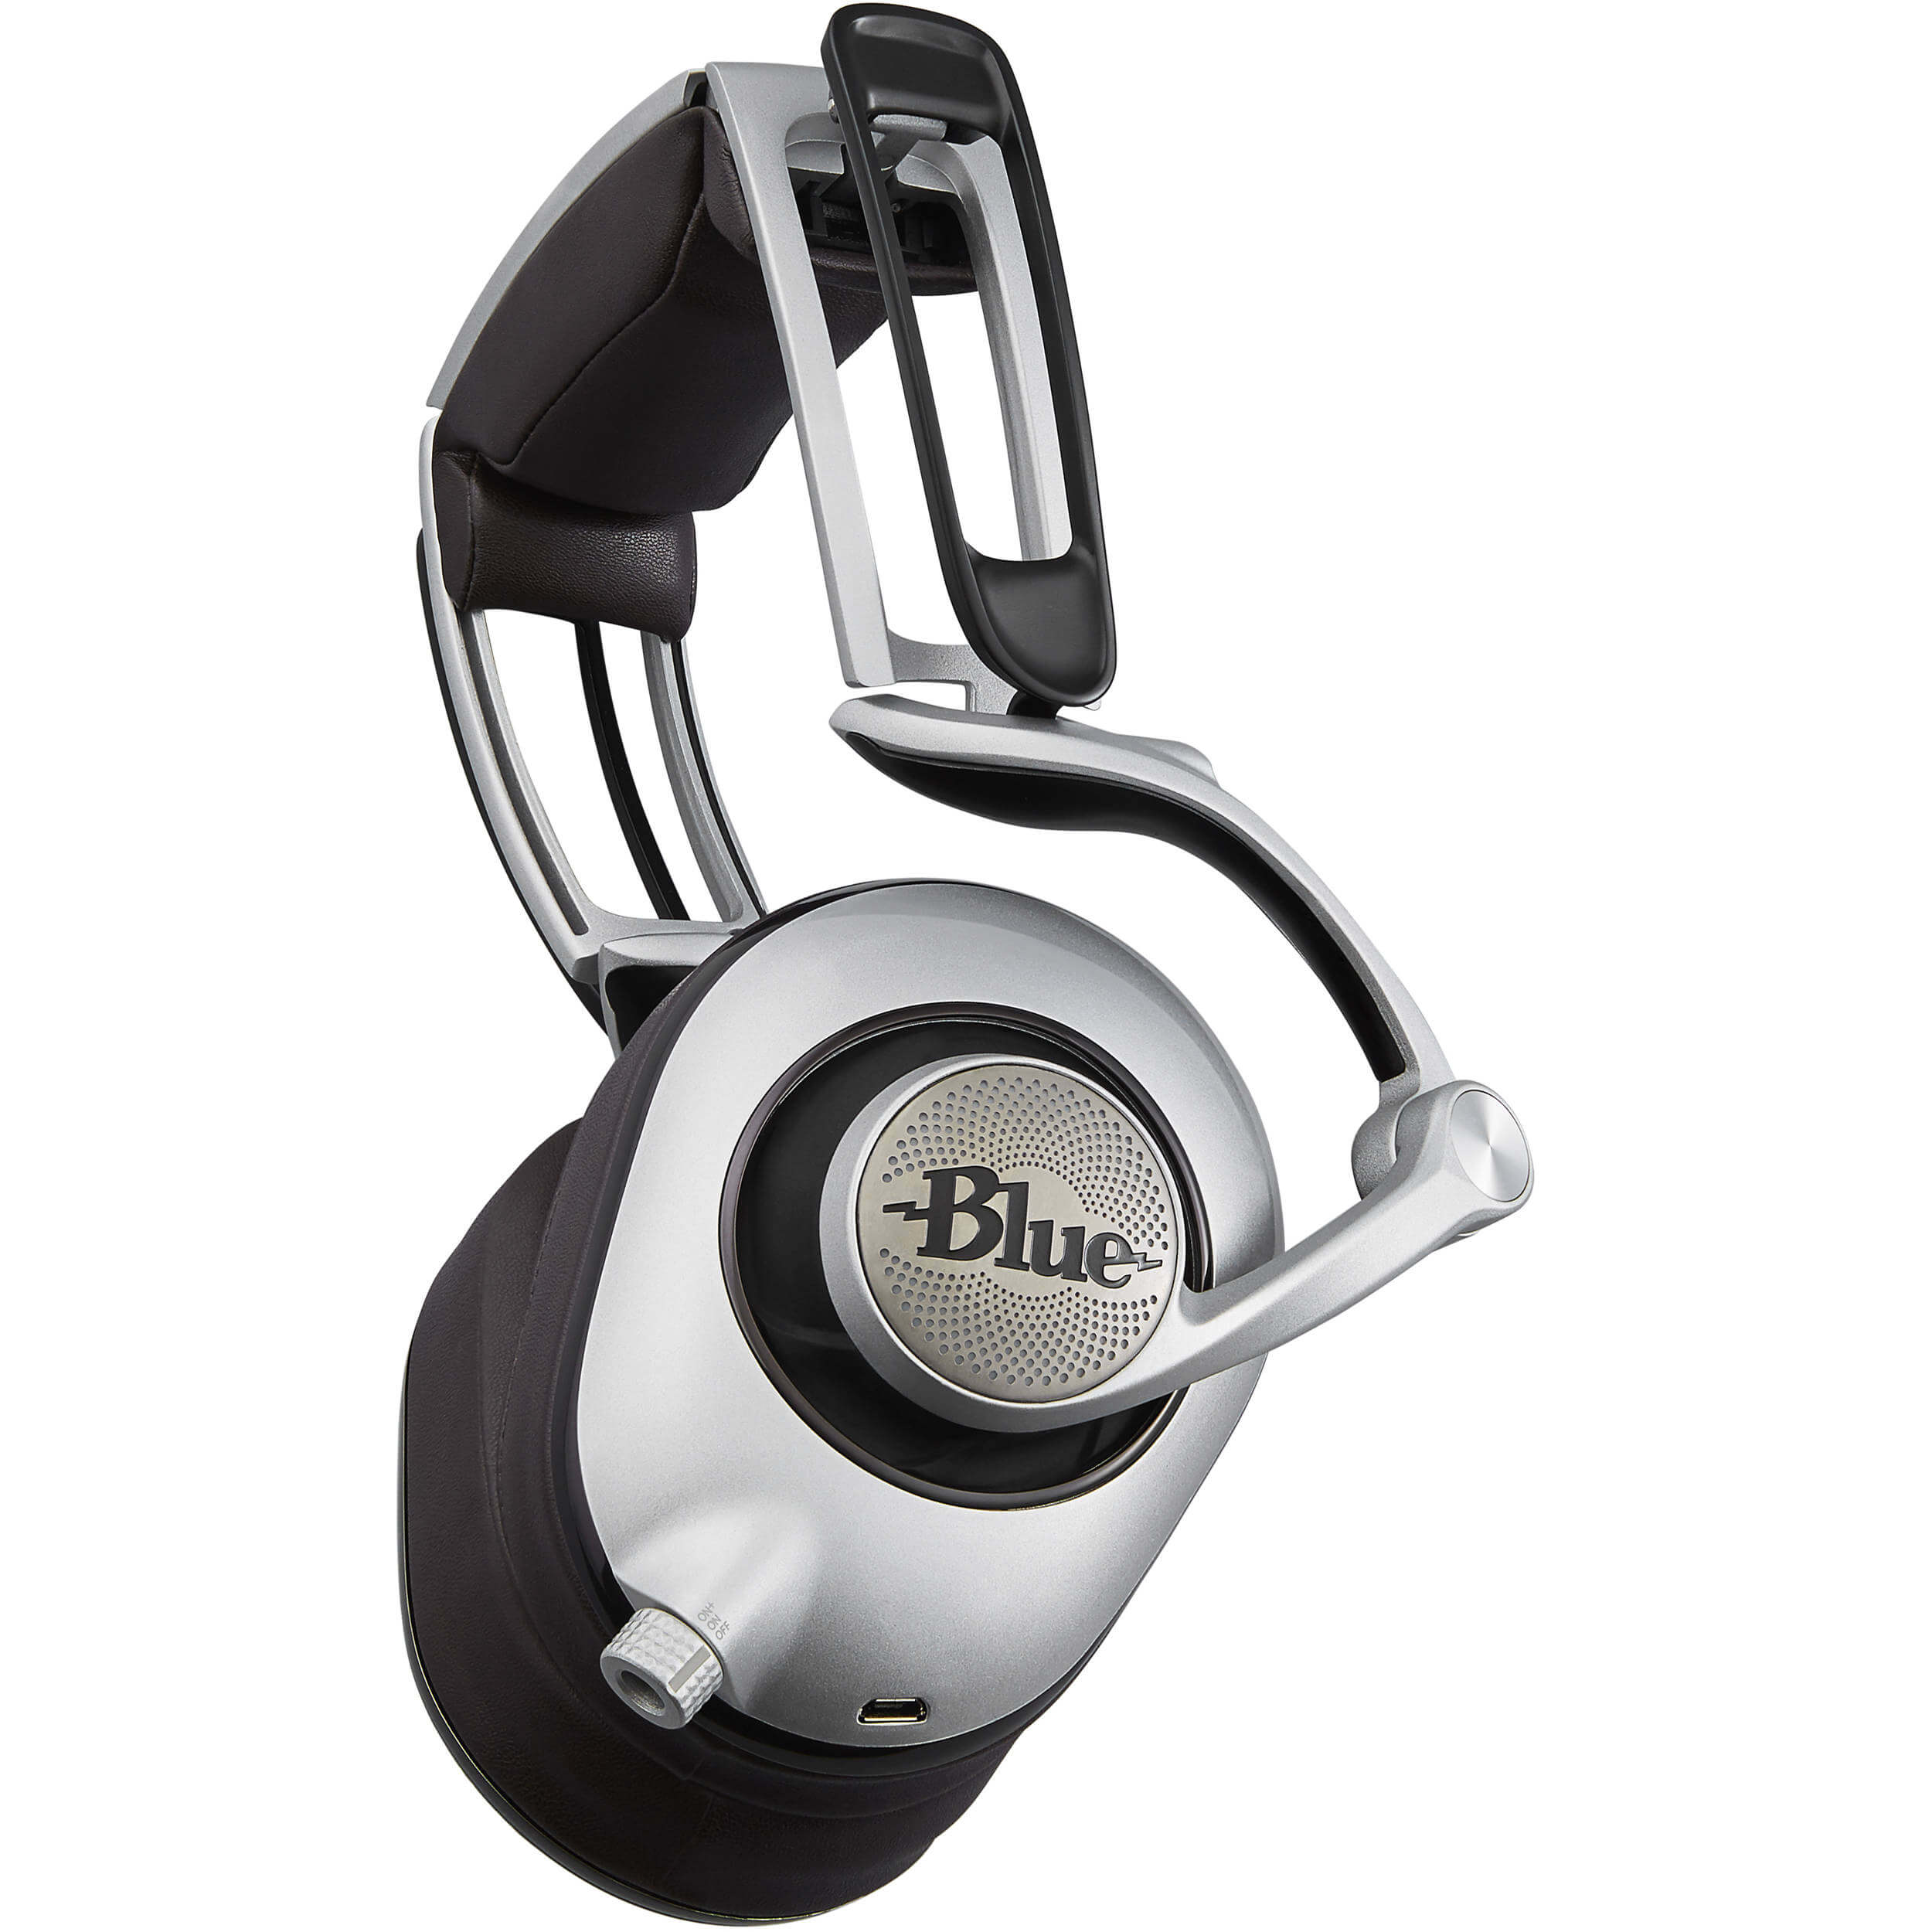 Blue Ella Headphones Review